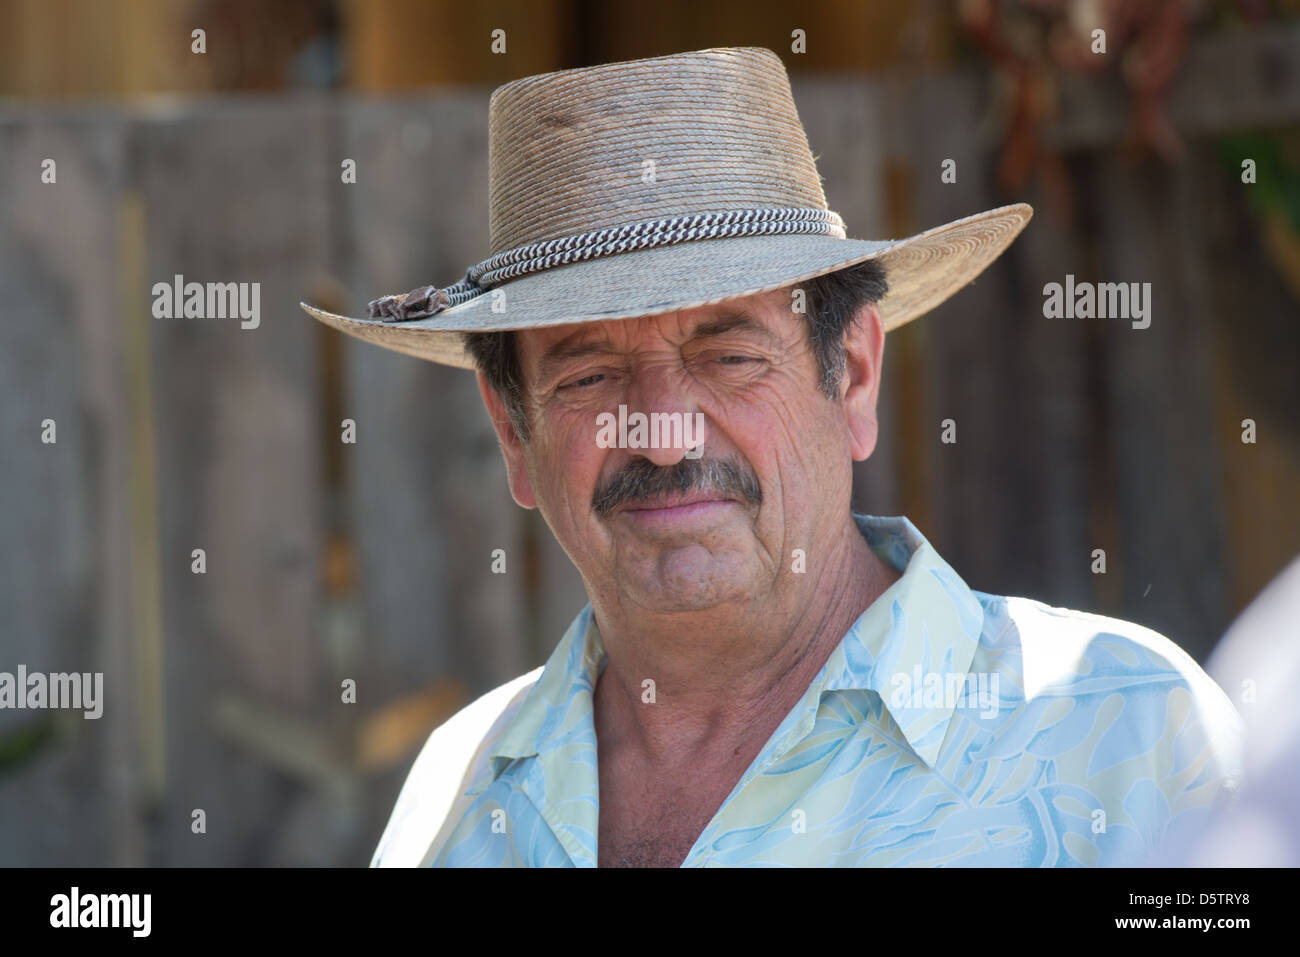 Chilean farmer in Rancagua, Chile on his tomato farm Stock Photo